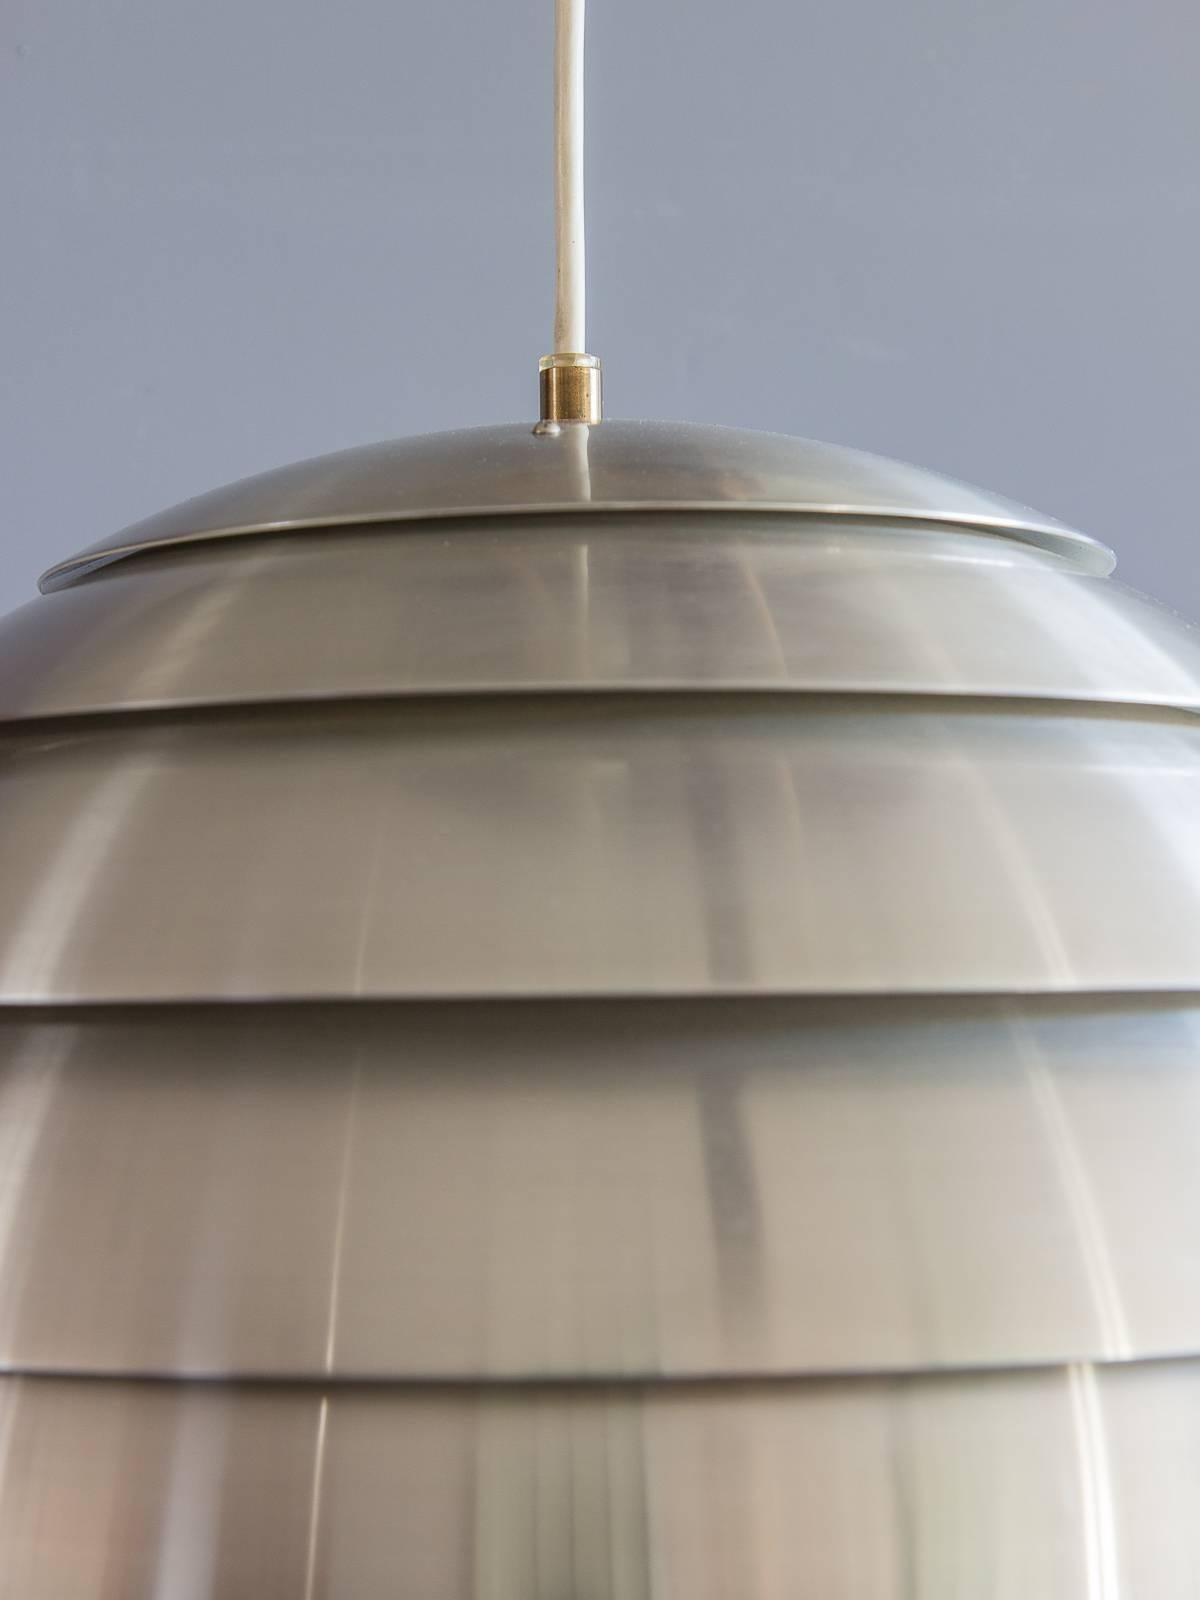 Sehr seltene, kuppelförmige Pendelleuchte von Hans-Agne Jakobsson für AB Markaryd. Fünf Aluminium-Lamellenringe bilden diese Raumfahrtleuchte aus den 1960er Jahren. Innen weiß emailliert. Hängen Sie diese skulpturale schwedische Form auf, um Ihren